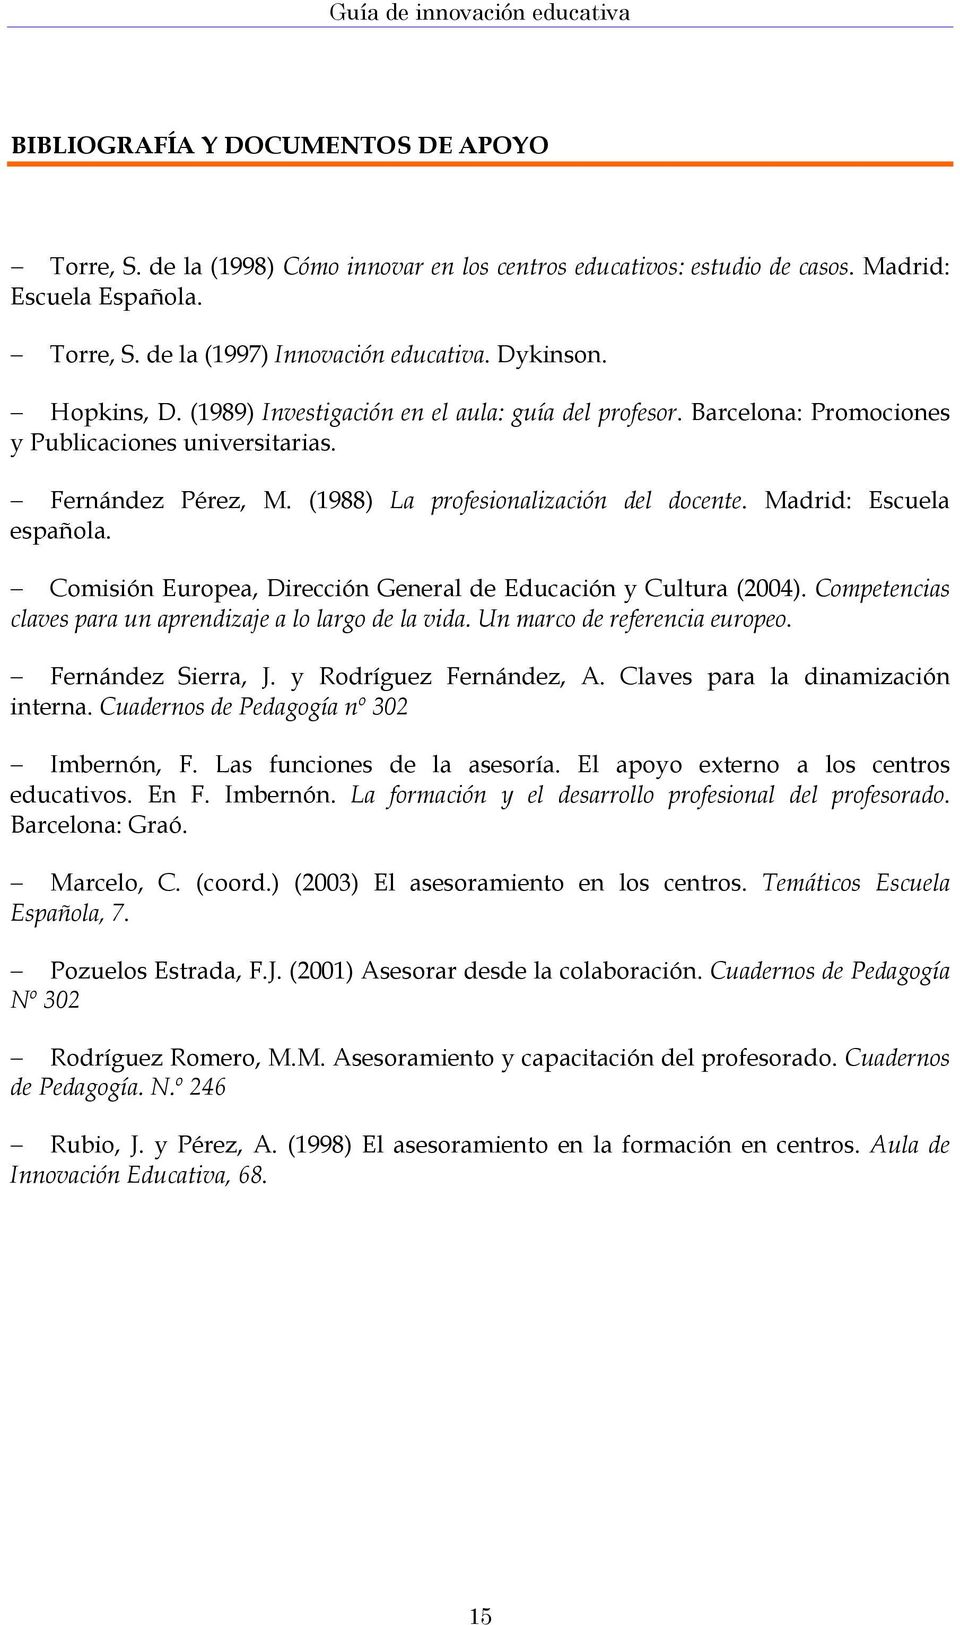 Madrid: Escuela española. Comisión Europea, Dirección General de Educación y Cultura (2004). Competencias claves para un aprendizaje a lo largo de la vida. Un marco de referencia europeo.